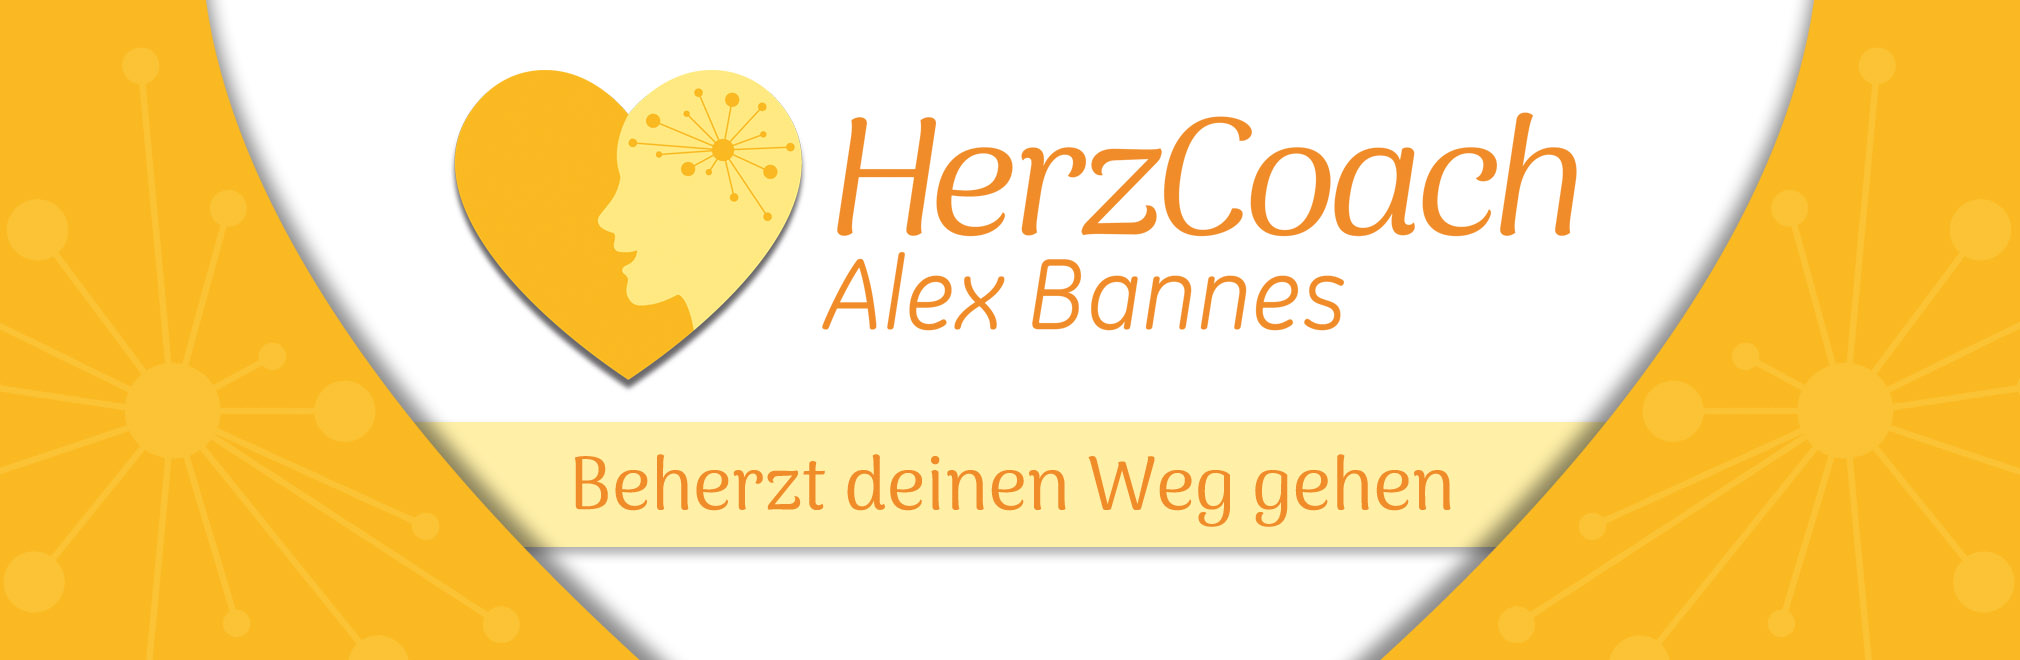 HerzCoach Alex Bannes - Beherzt deinen Weg gehen